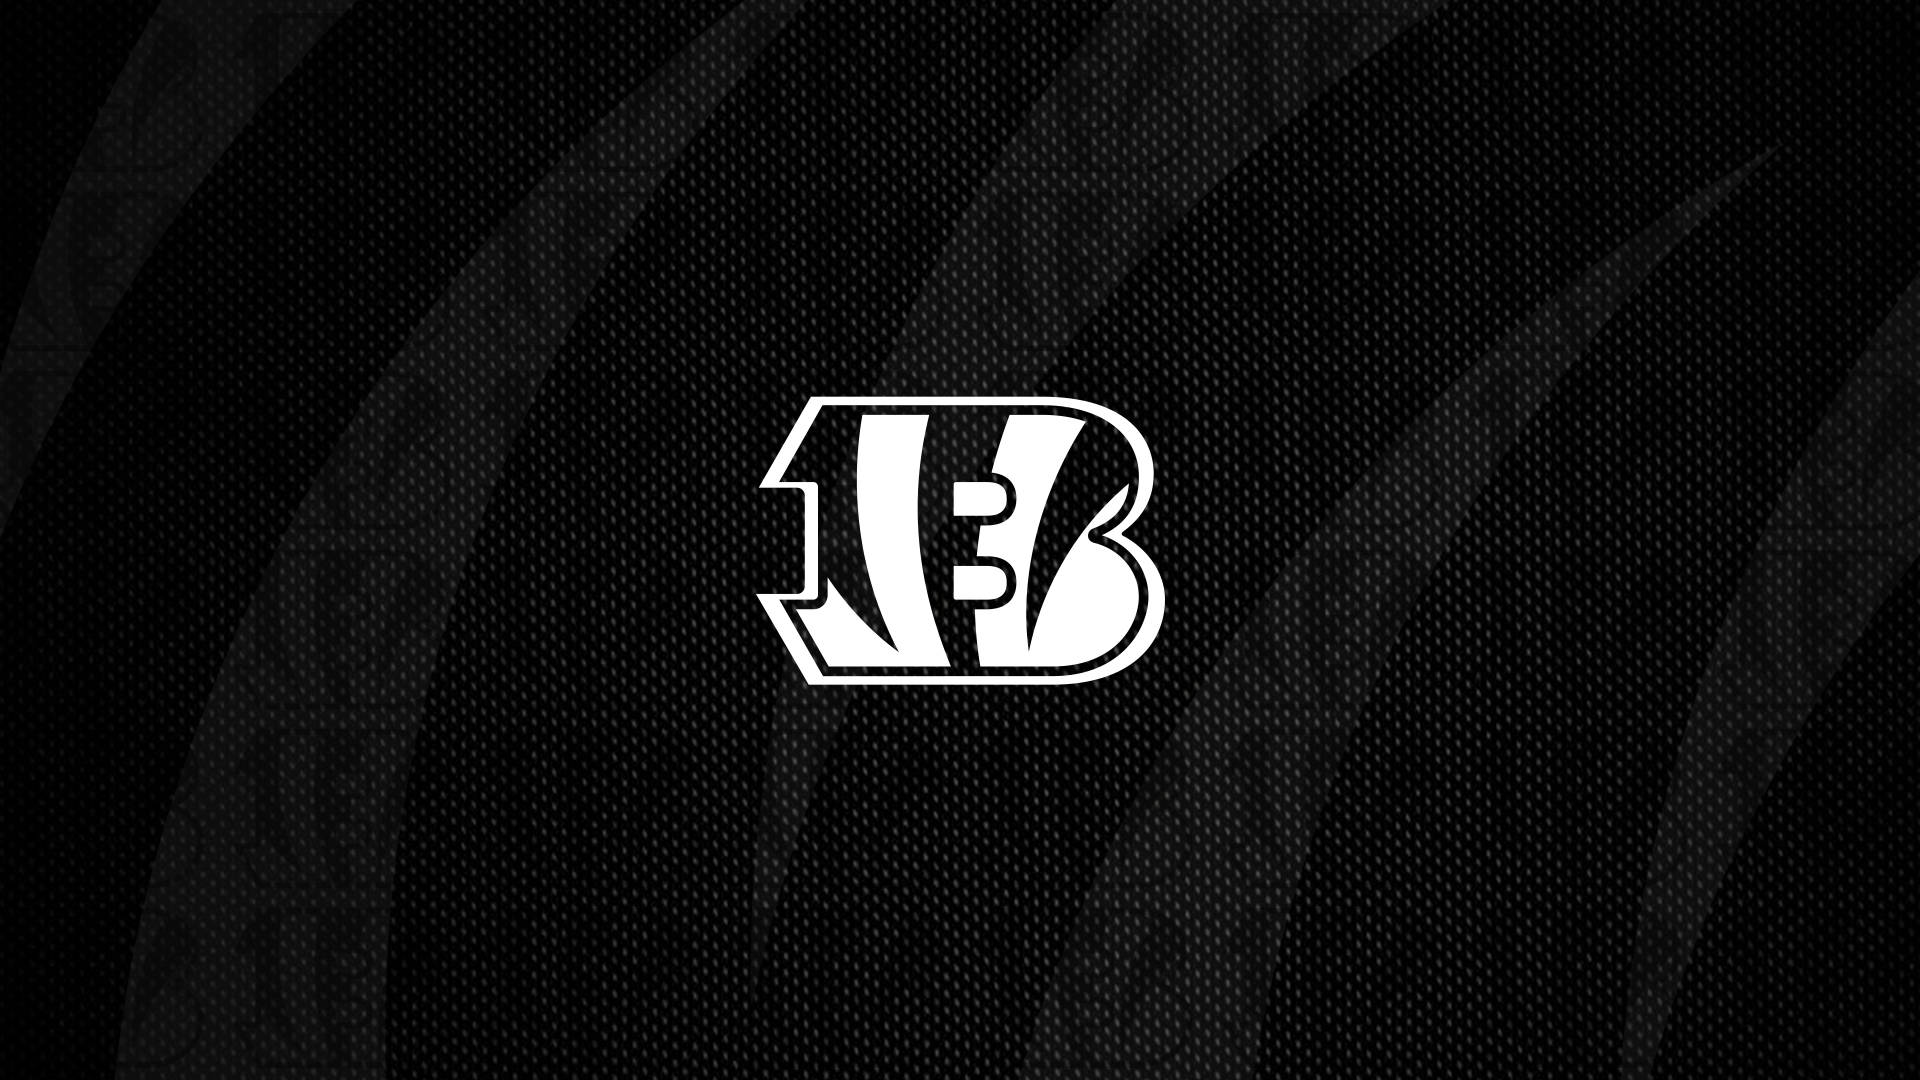 Black And White Cincinnati Bengals Logo Wallpaper